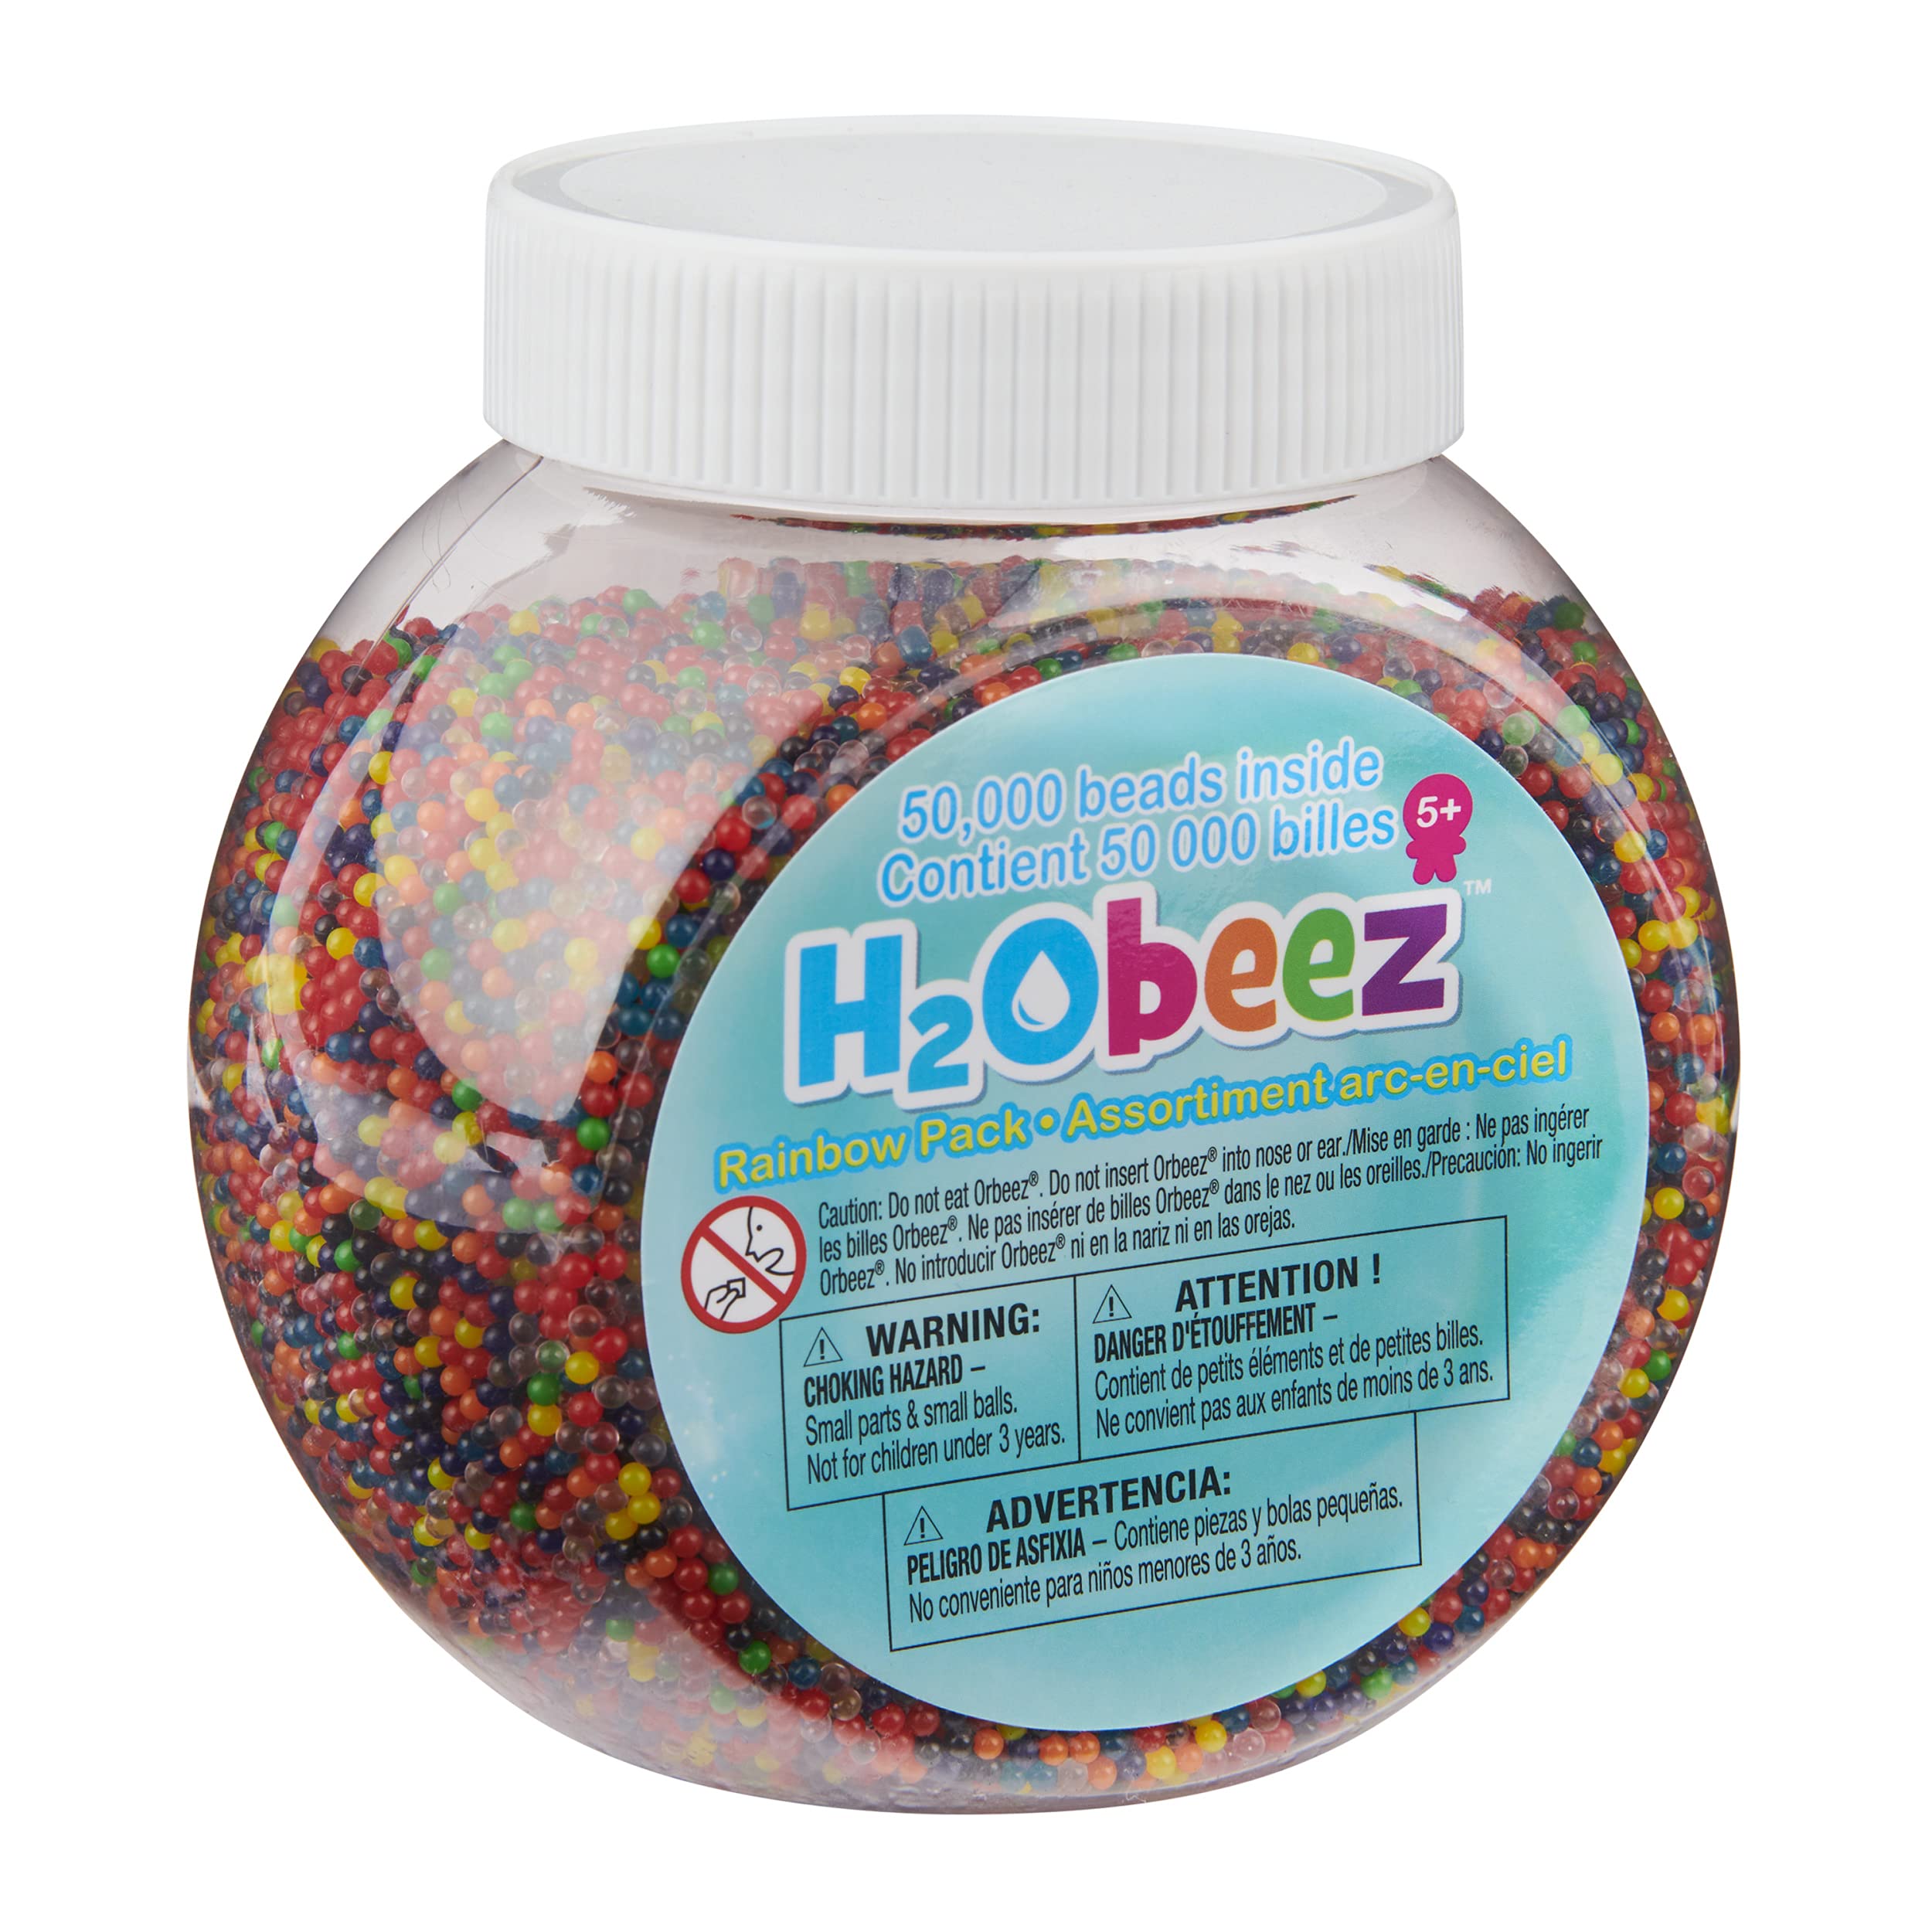 Orbeez, H2Obeez Rainbow Pack (Amazon Exclusive)